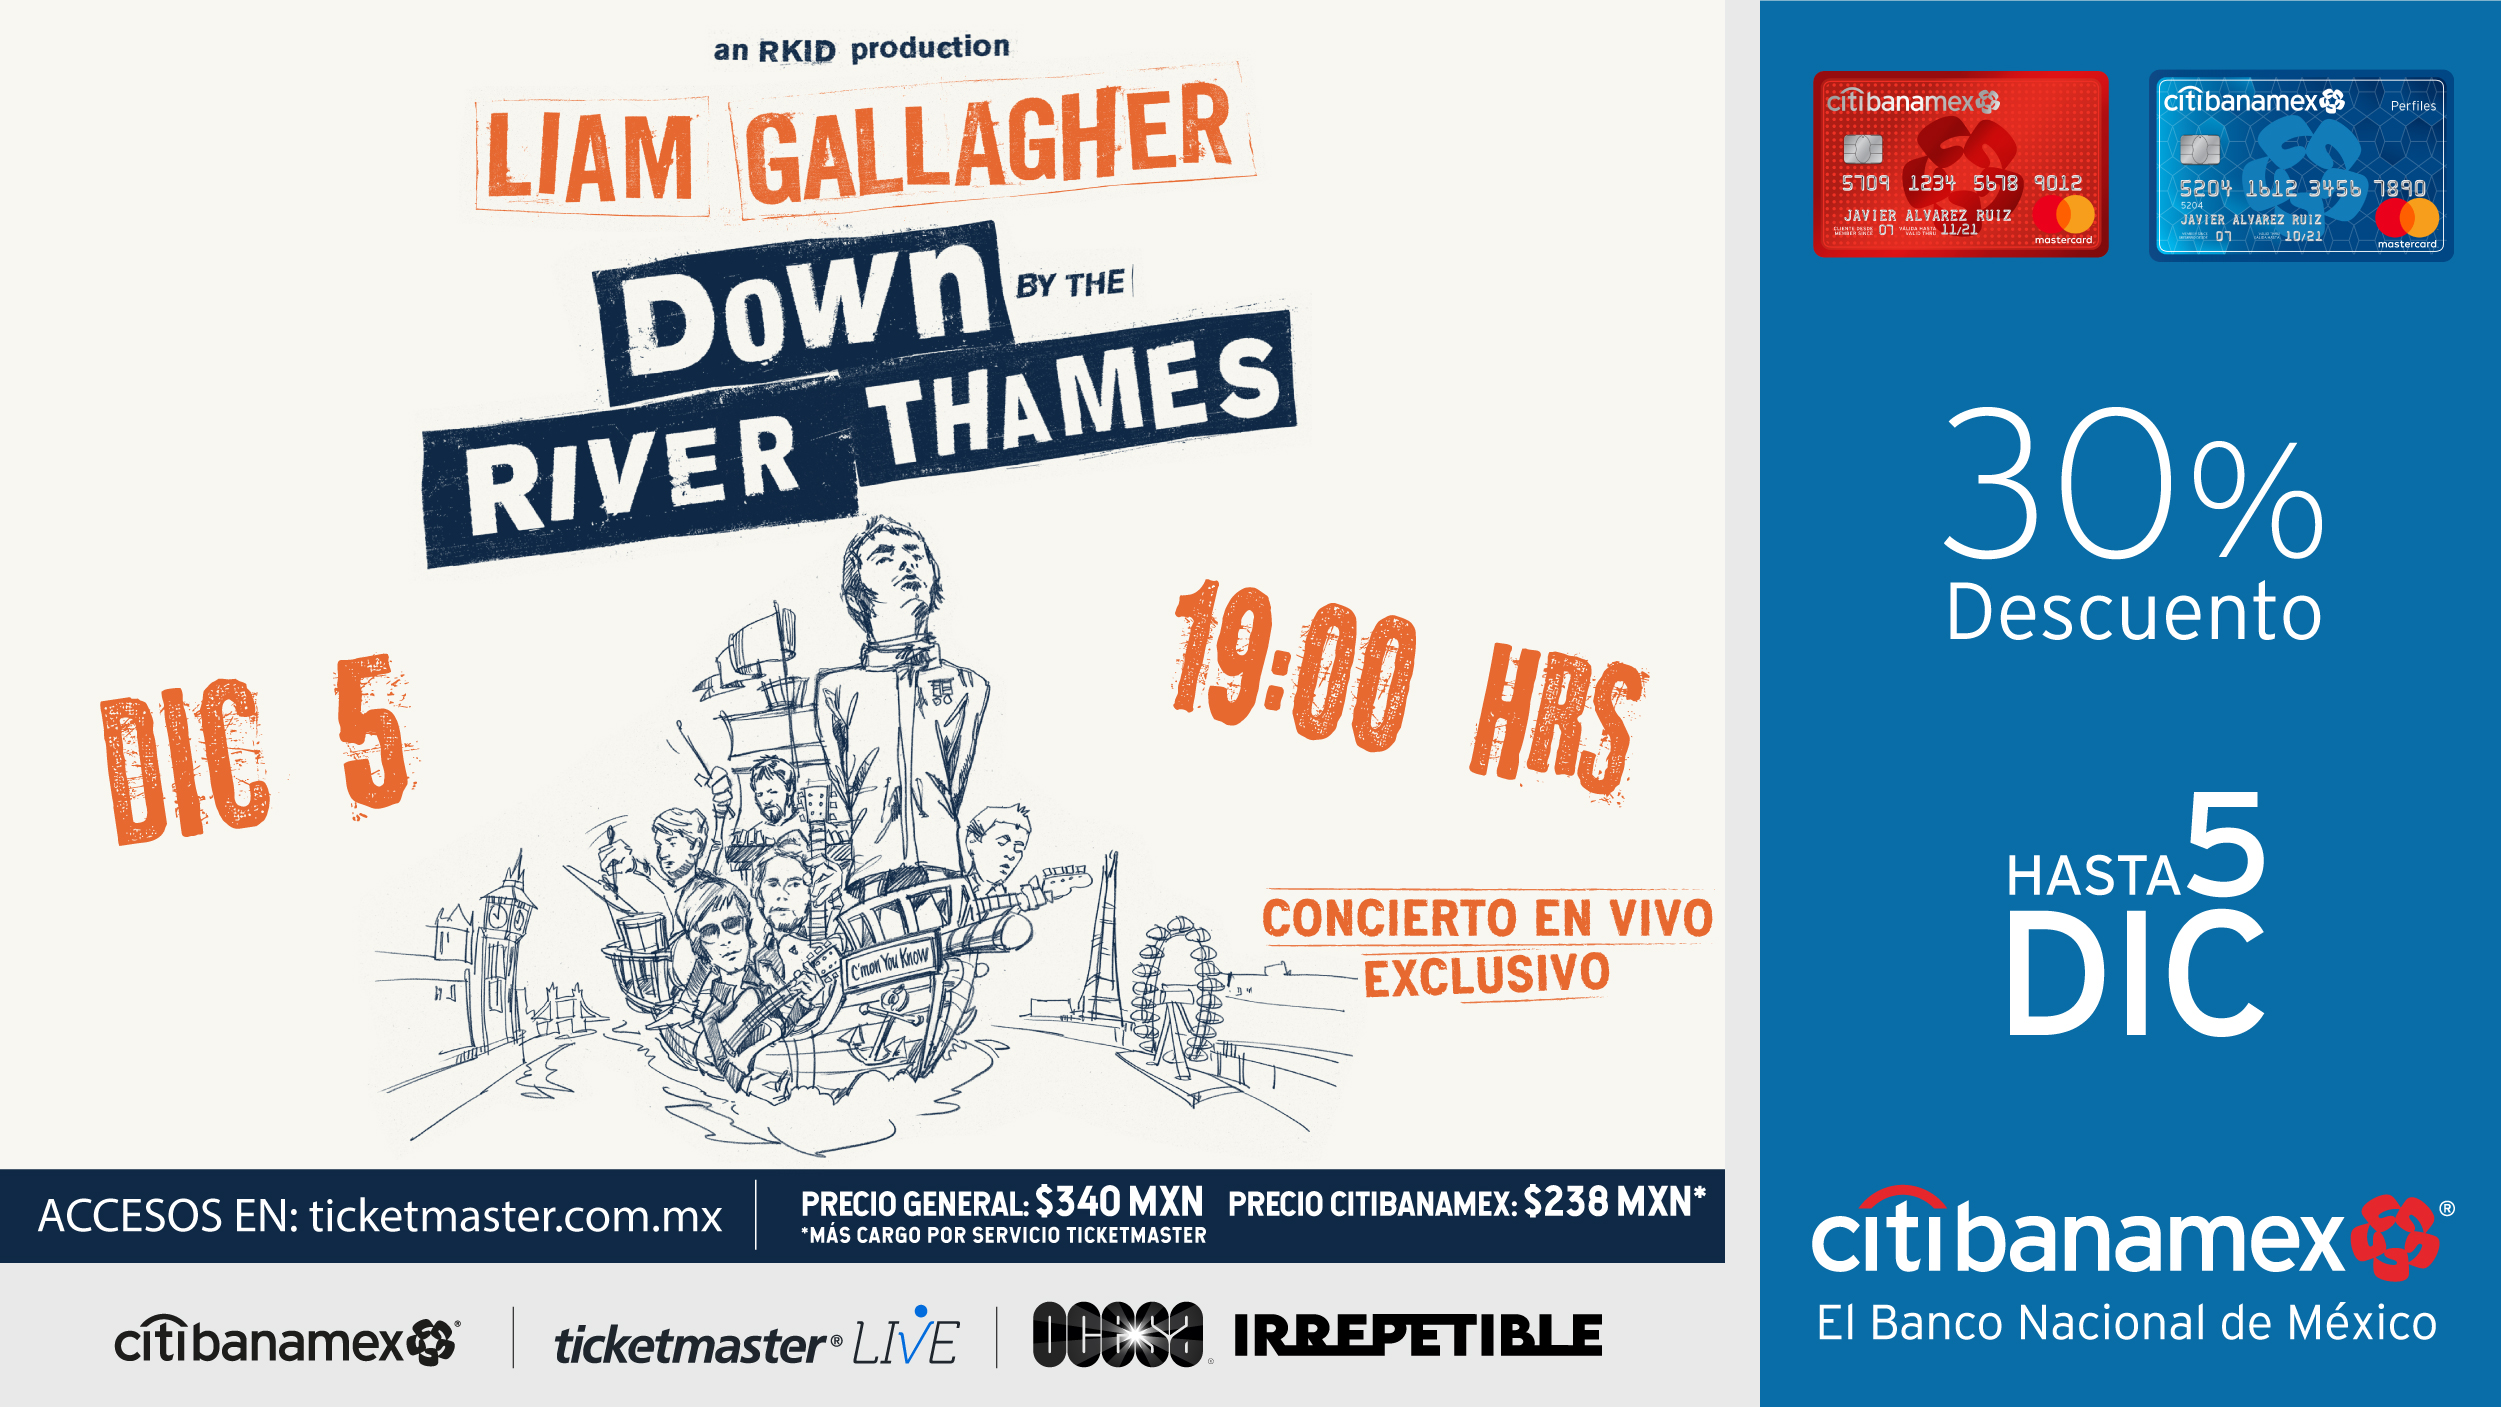 Después de ocho meses sin conciertos, Liam Gallagher por fin le entrará a los shows en línea con un espectáculo desde el río Támesis. 